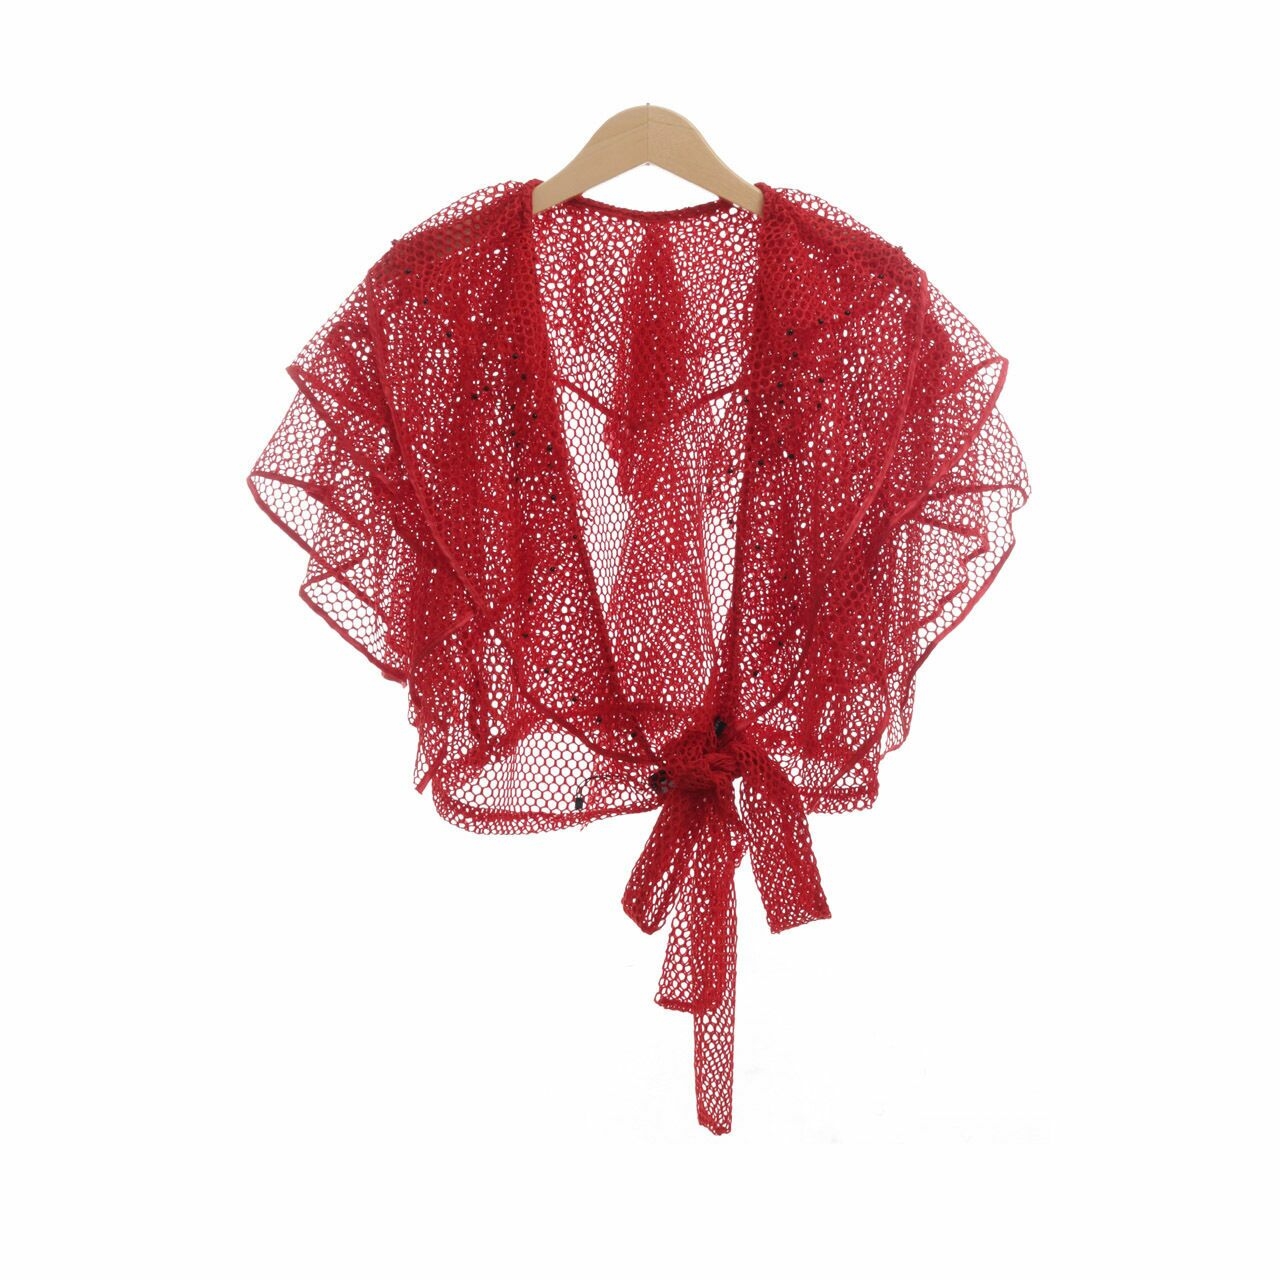 Douche Red Perorated Ruffle Kimono